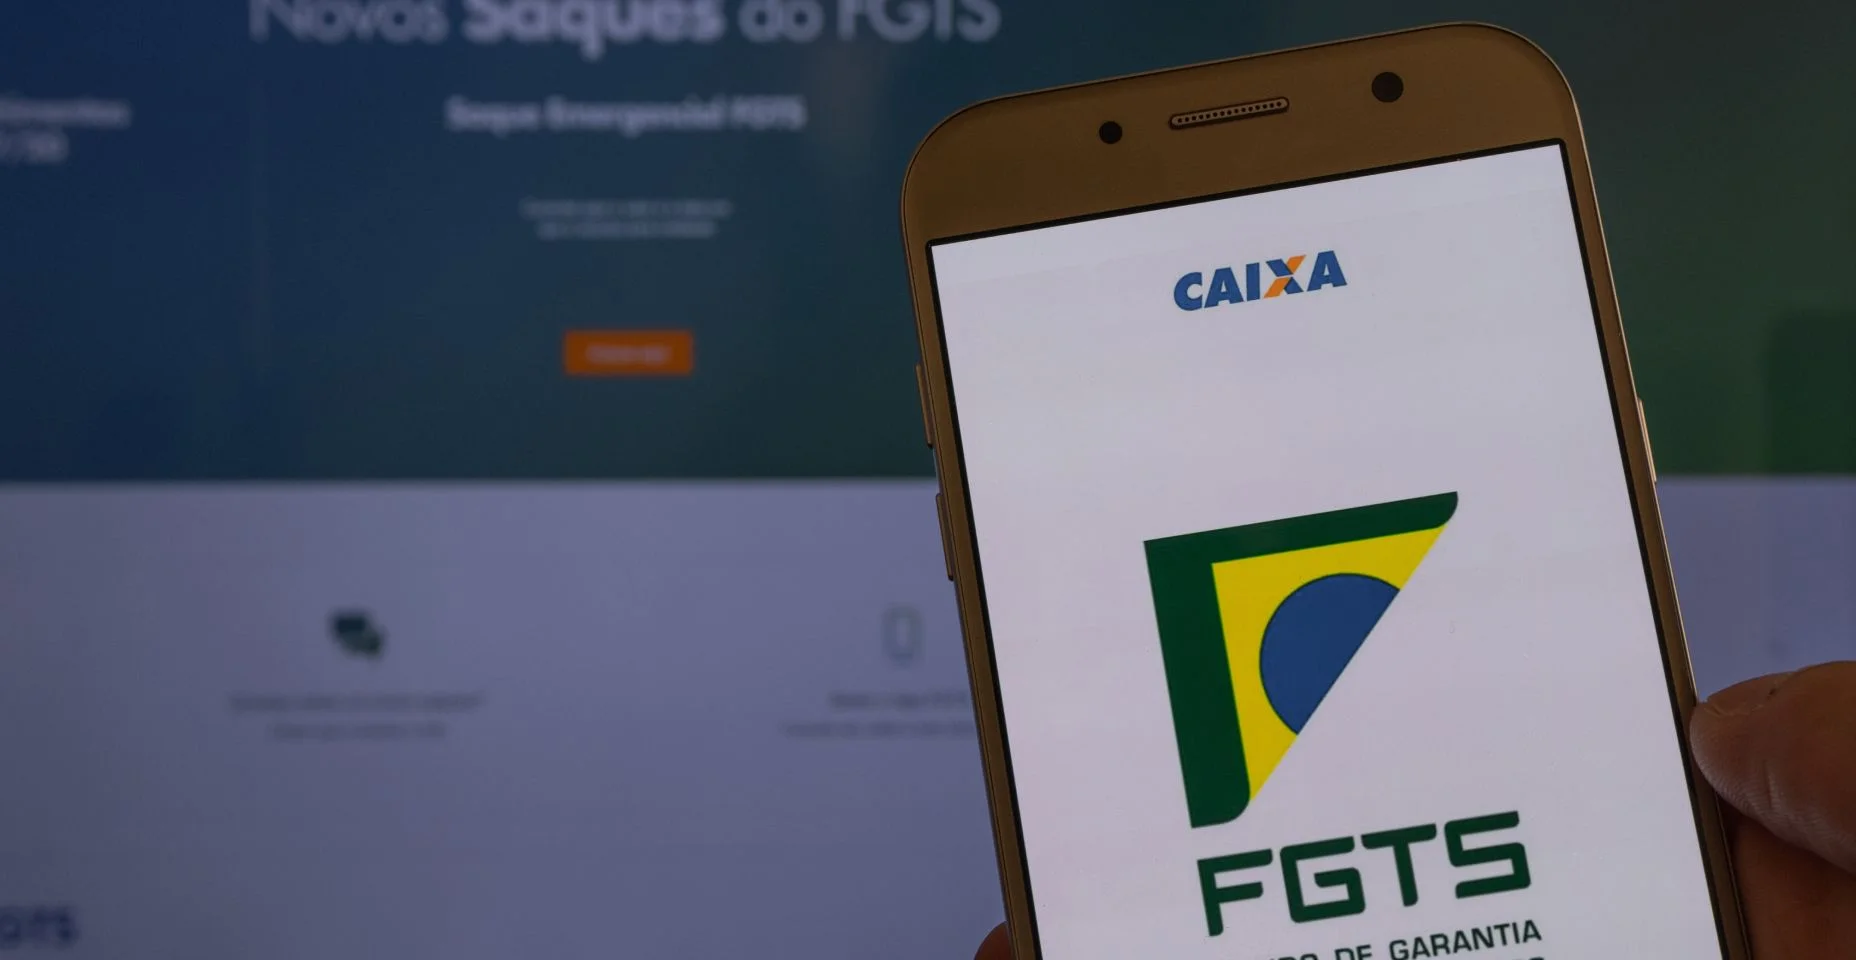 Aplicação do FGTS (Fundo Garantidor do Brasil) na tela do smartphone nas notas monetárias brasileiras